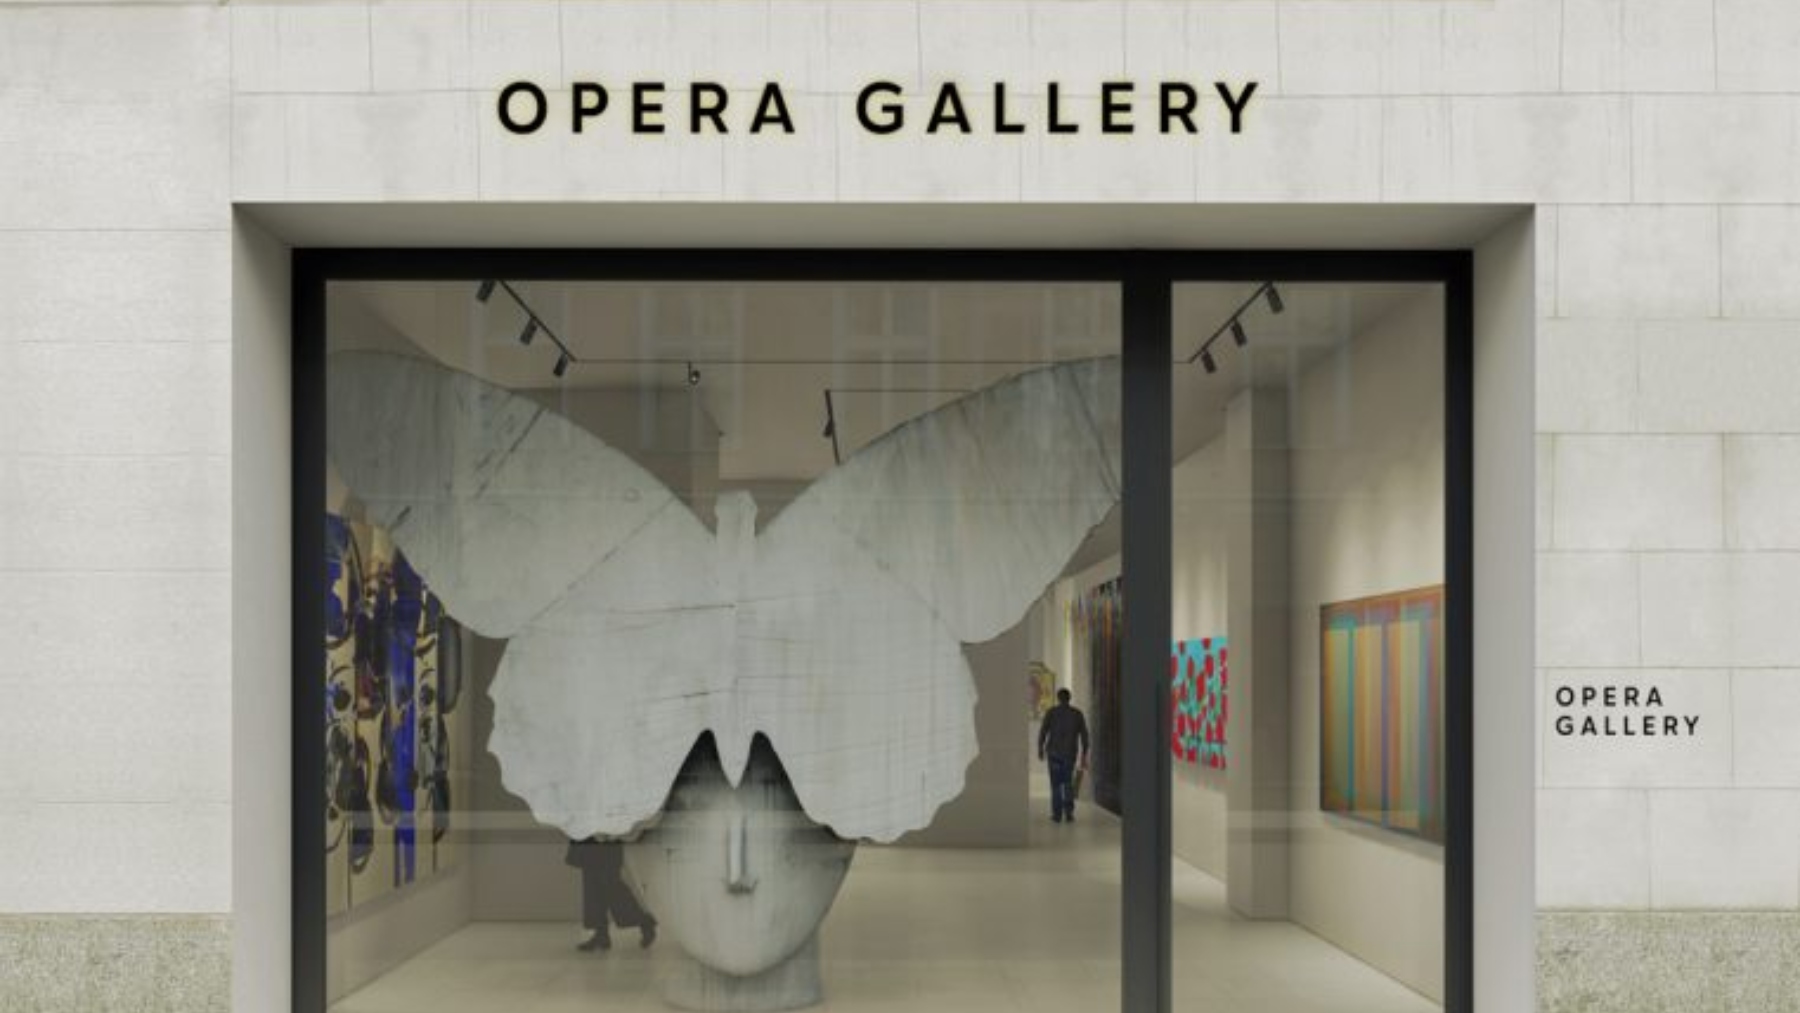 Hablamos con Belén Herrera, la directora de Opera Gallery, la nueva galería que llega a Madrid